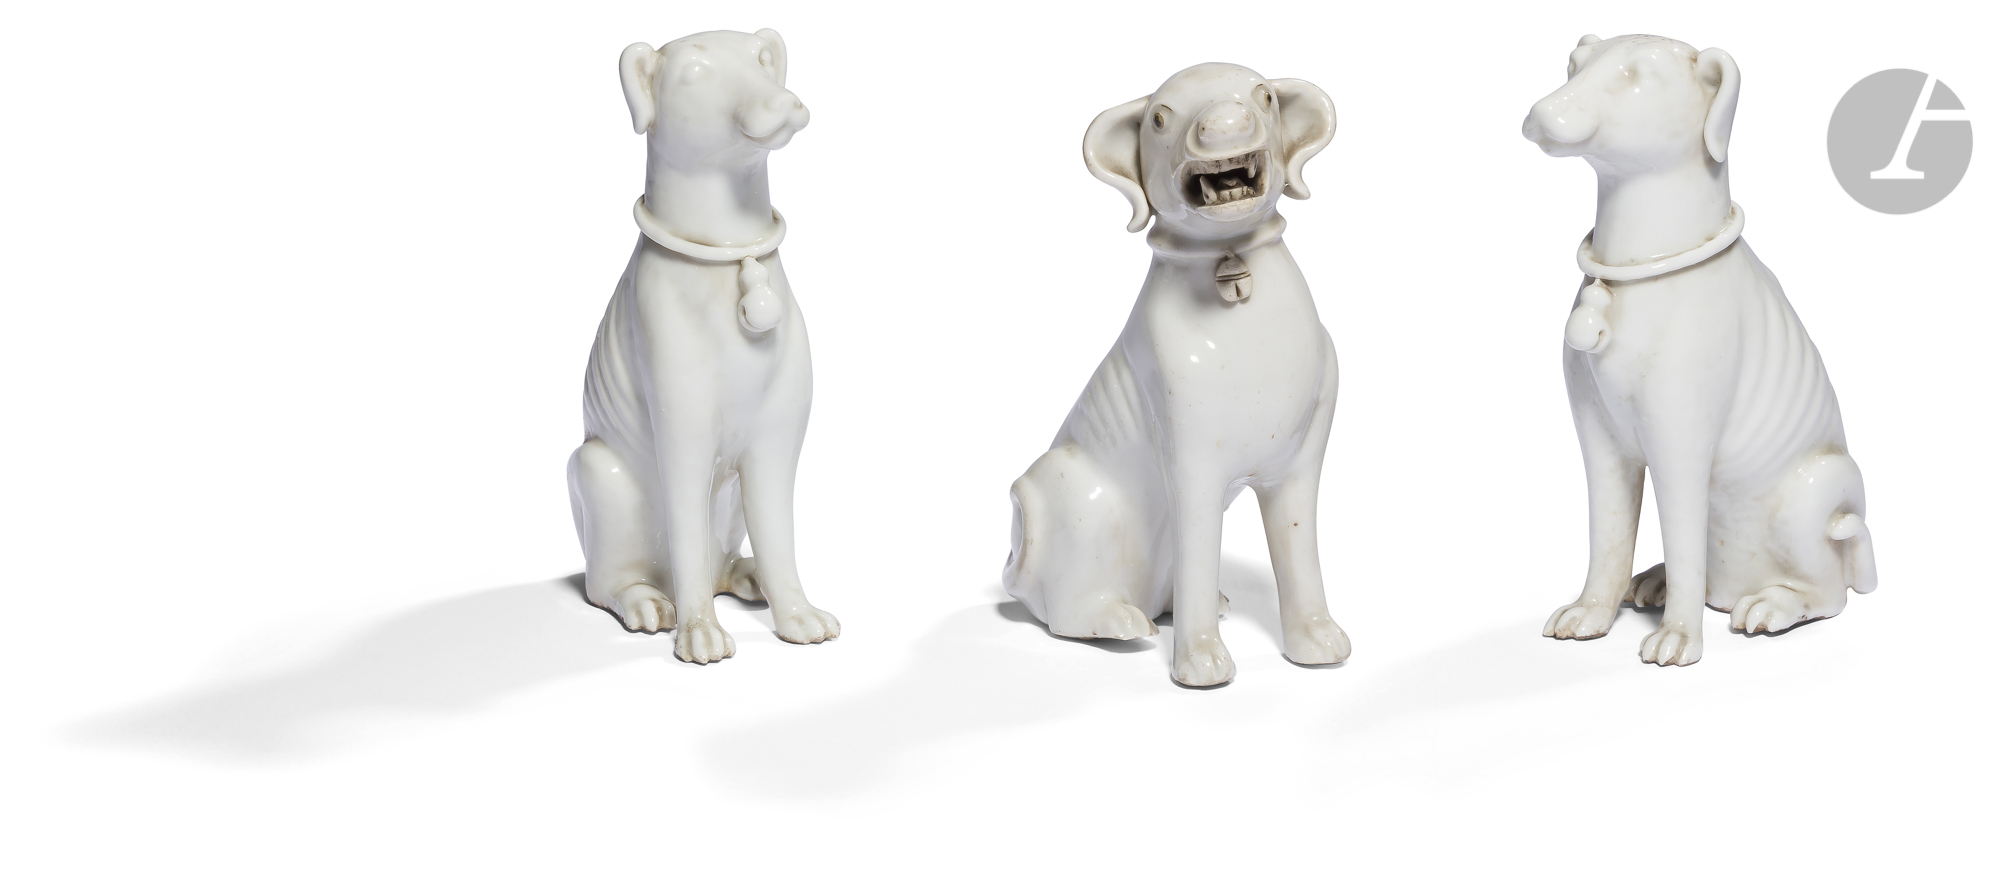 CHINE - XVIIIe/XIXe siècle Statuette en porcelaine blanche de chien assis, la gueule ouverte. H.